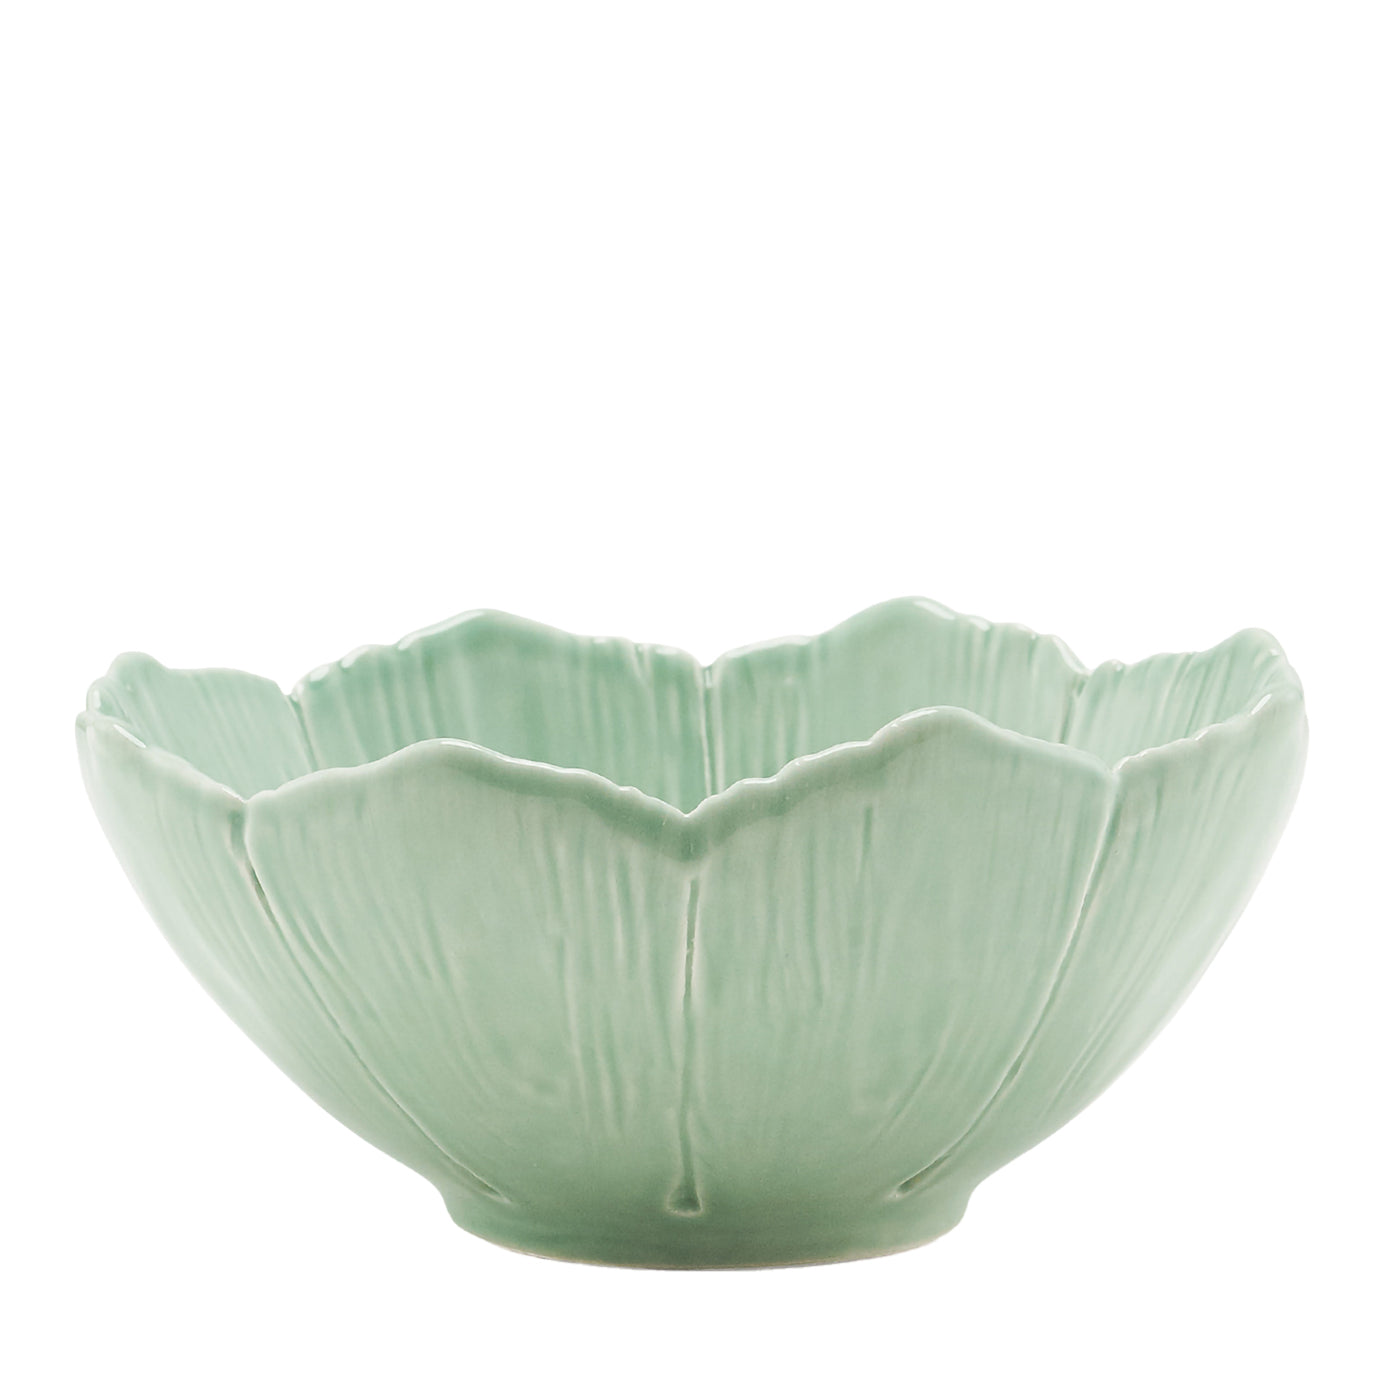 Juego de 2 fruteros de cerámica fina verde Flor de Cerezo   - Vista principal